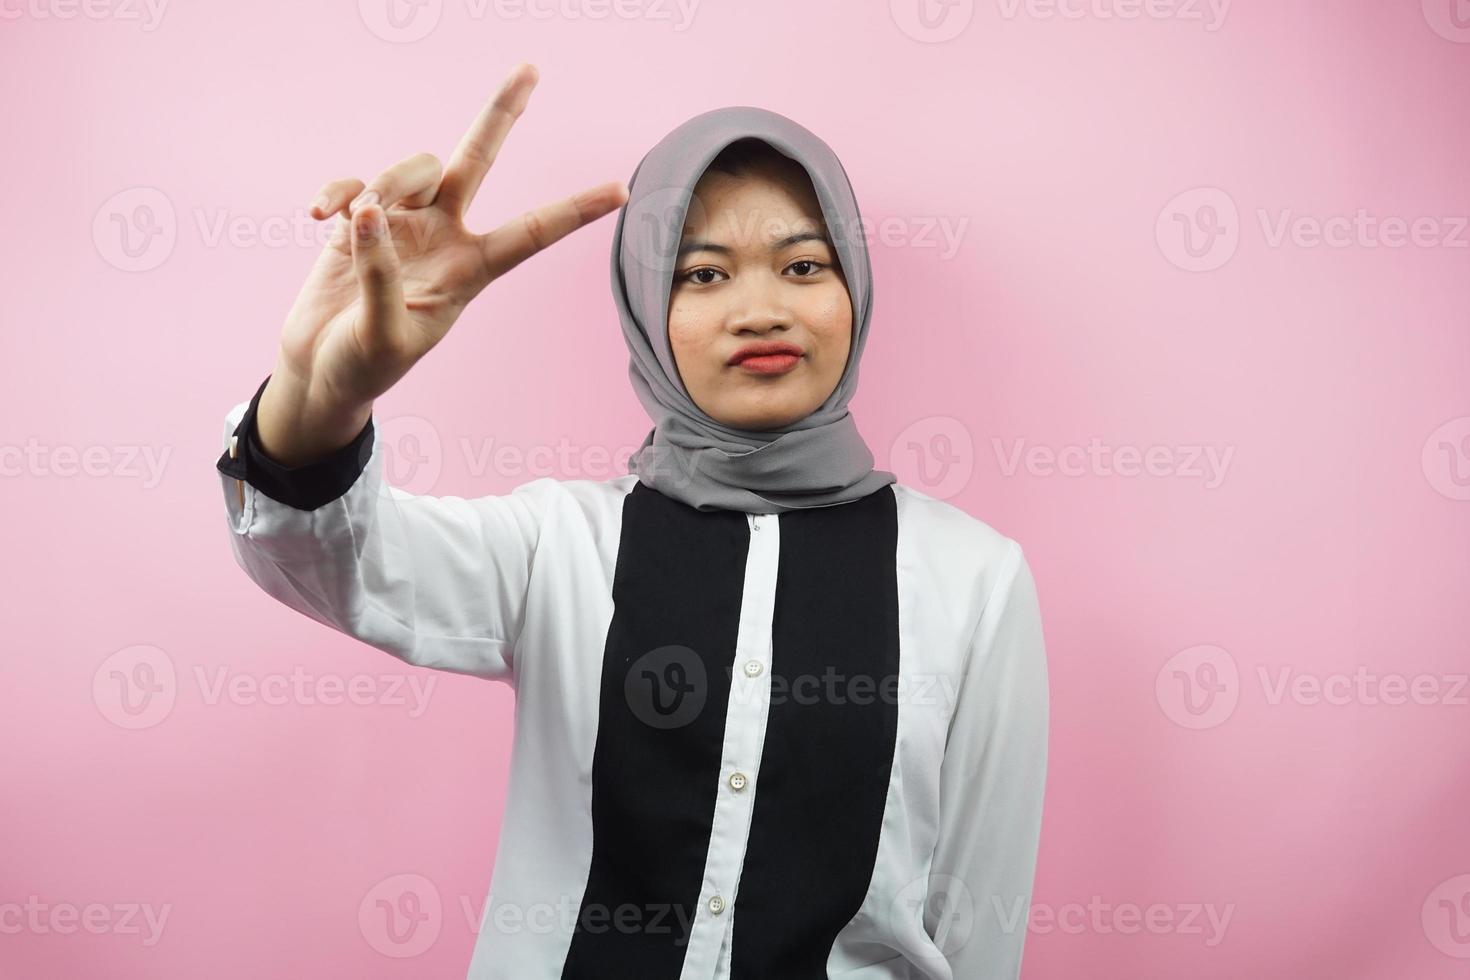 Hermosa joven musulmana asiática haciendo pucheros con las manos firmadas en V, ok, buen trabajo, acuerdo, victoria, mirando a la cámara aislada sobre fondo rosa foto